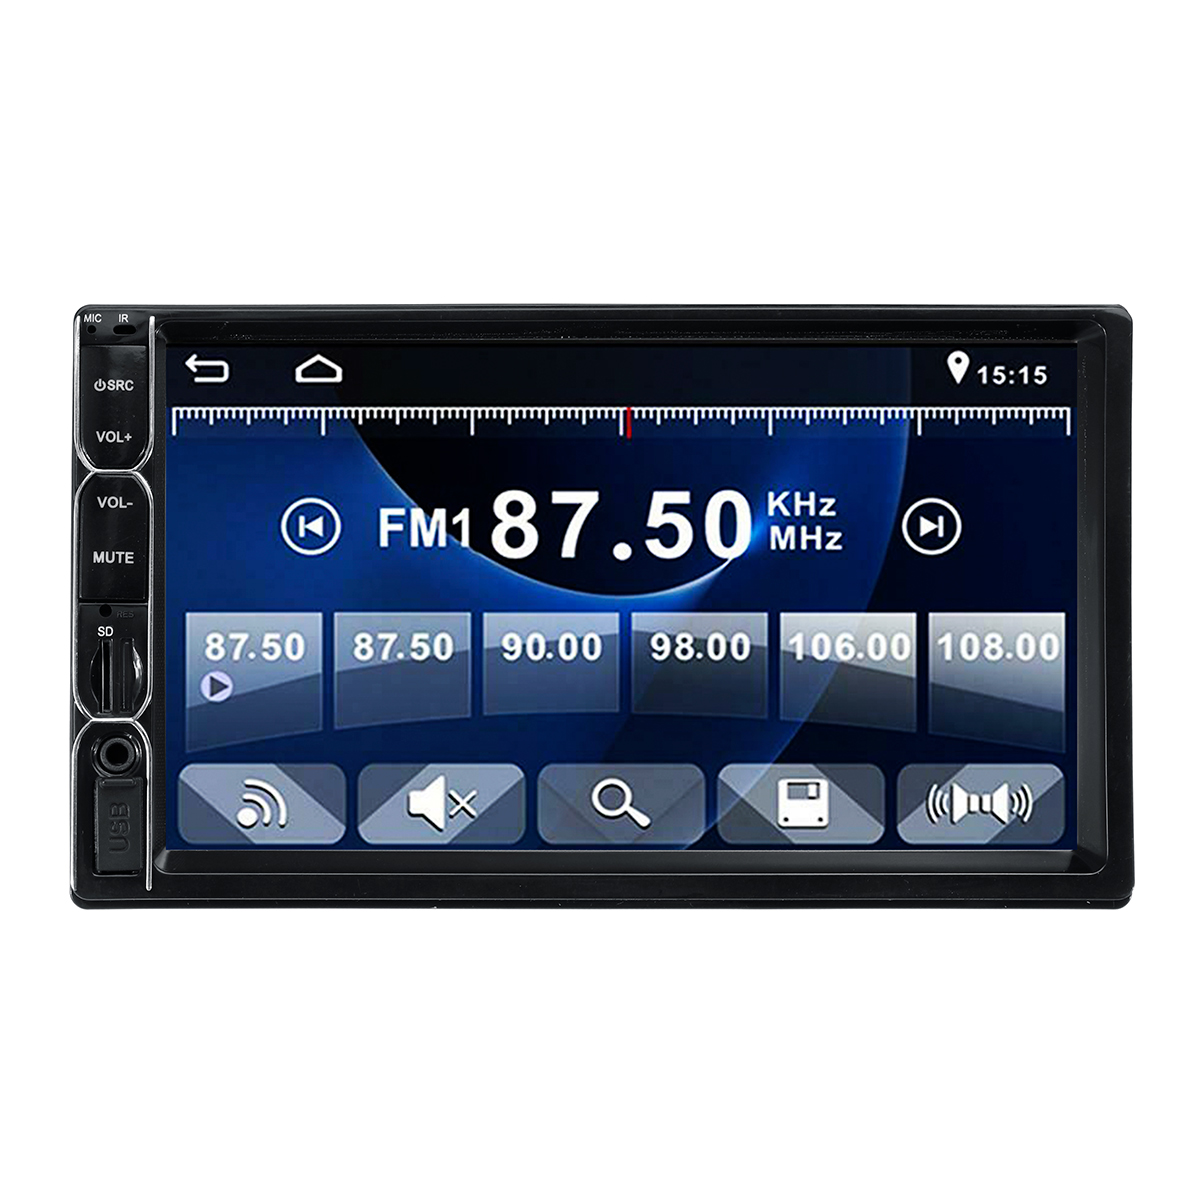 

7 дюймов 2 Din Авто Стерео Авто Радио Мультимедиа MP5-плеер Вид сзади камера HD Bluetooth с сенсорным экраном громкой связи Радио FM Aux